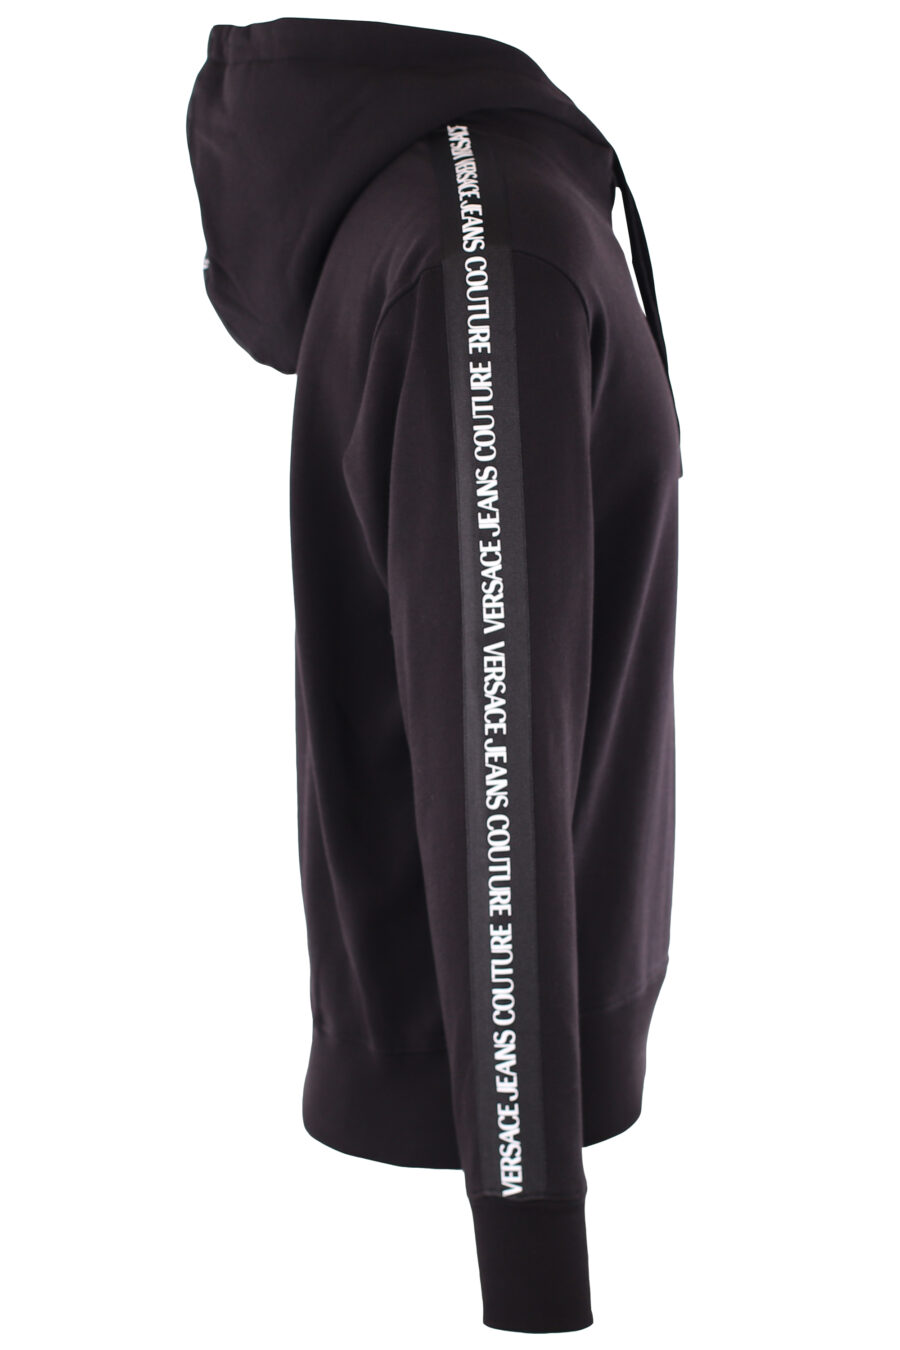 Camisola preta com capuz e logótipo com fita nas mangas - IMG 6452